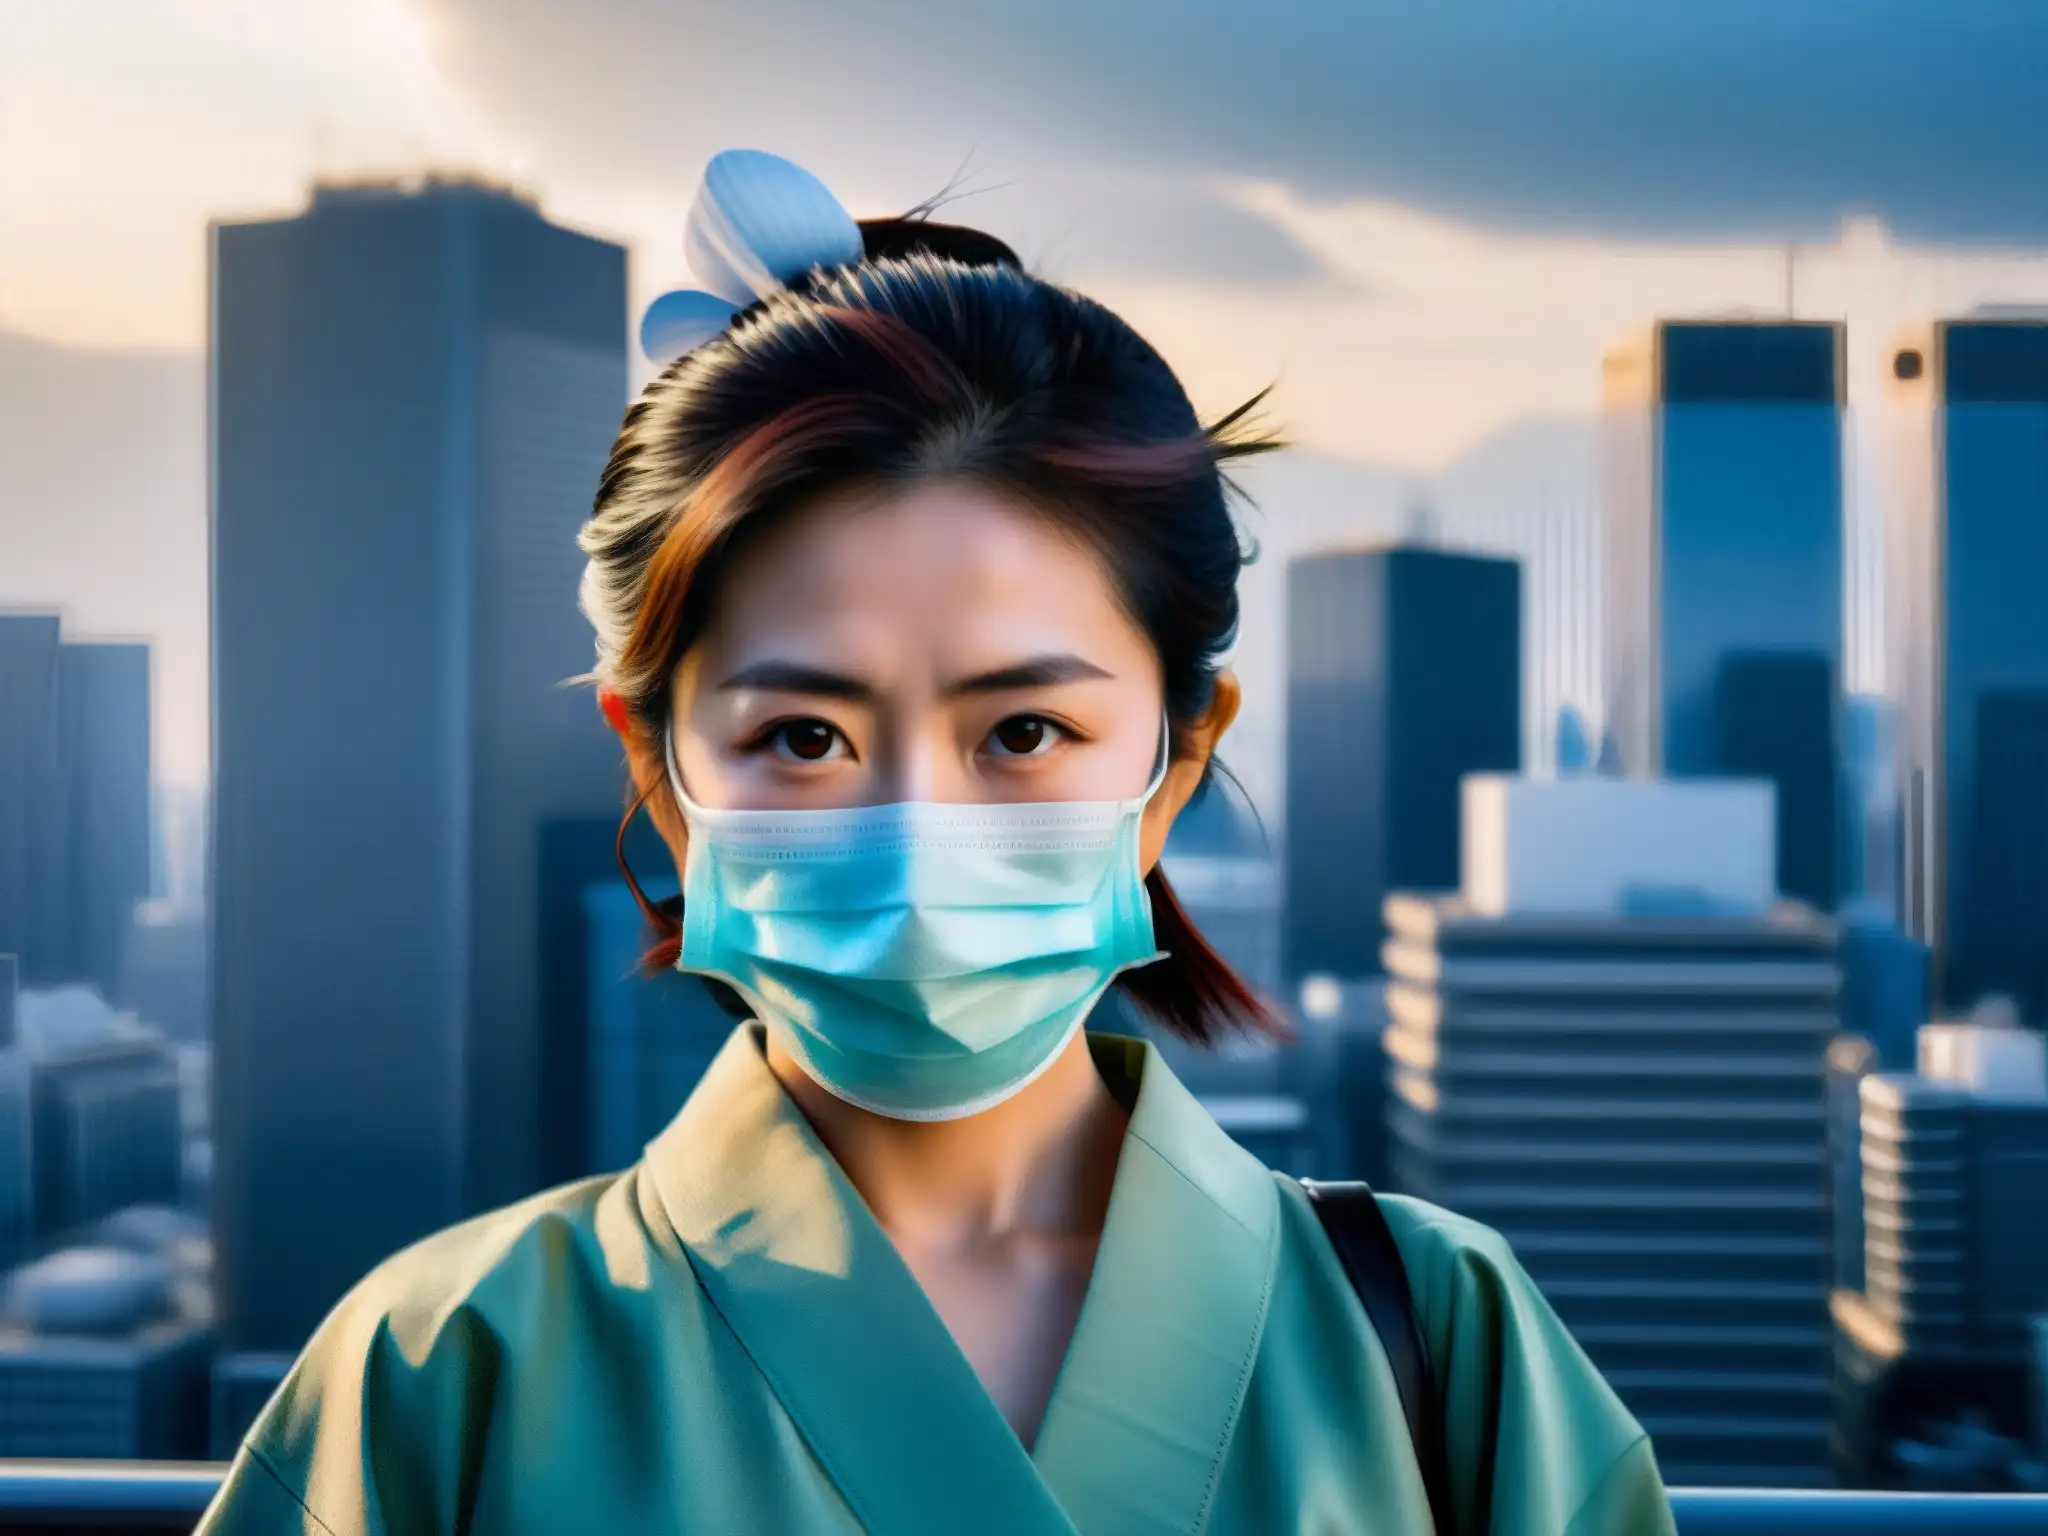 Una mujer en kimono y máscara quirúrgica, con una mirada enigmática, entre rascacielos de Tokio